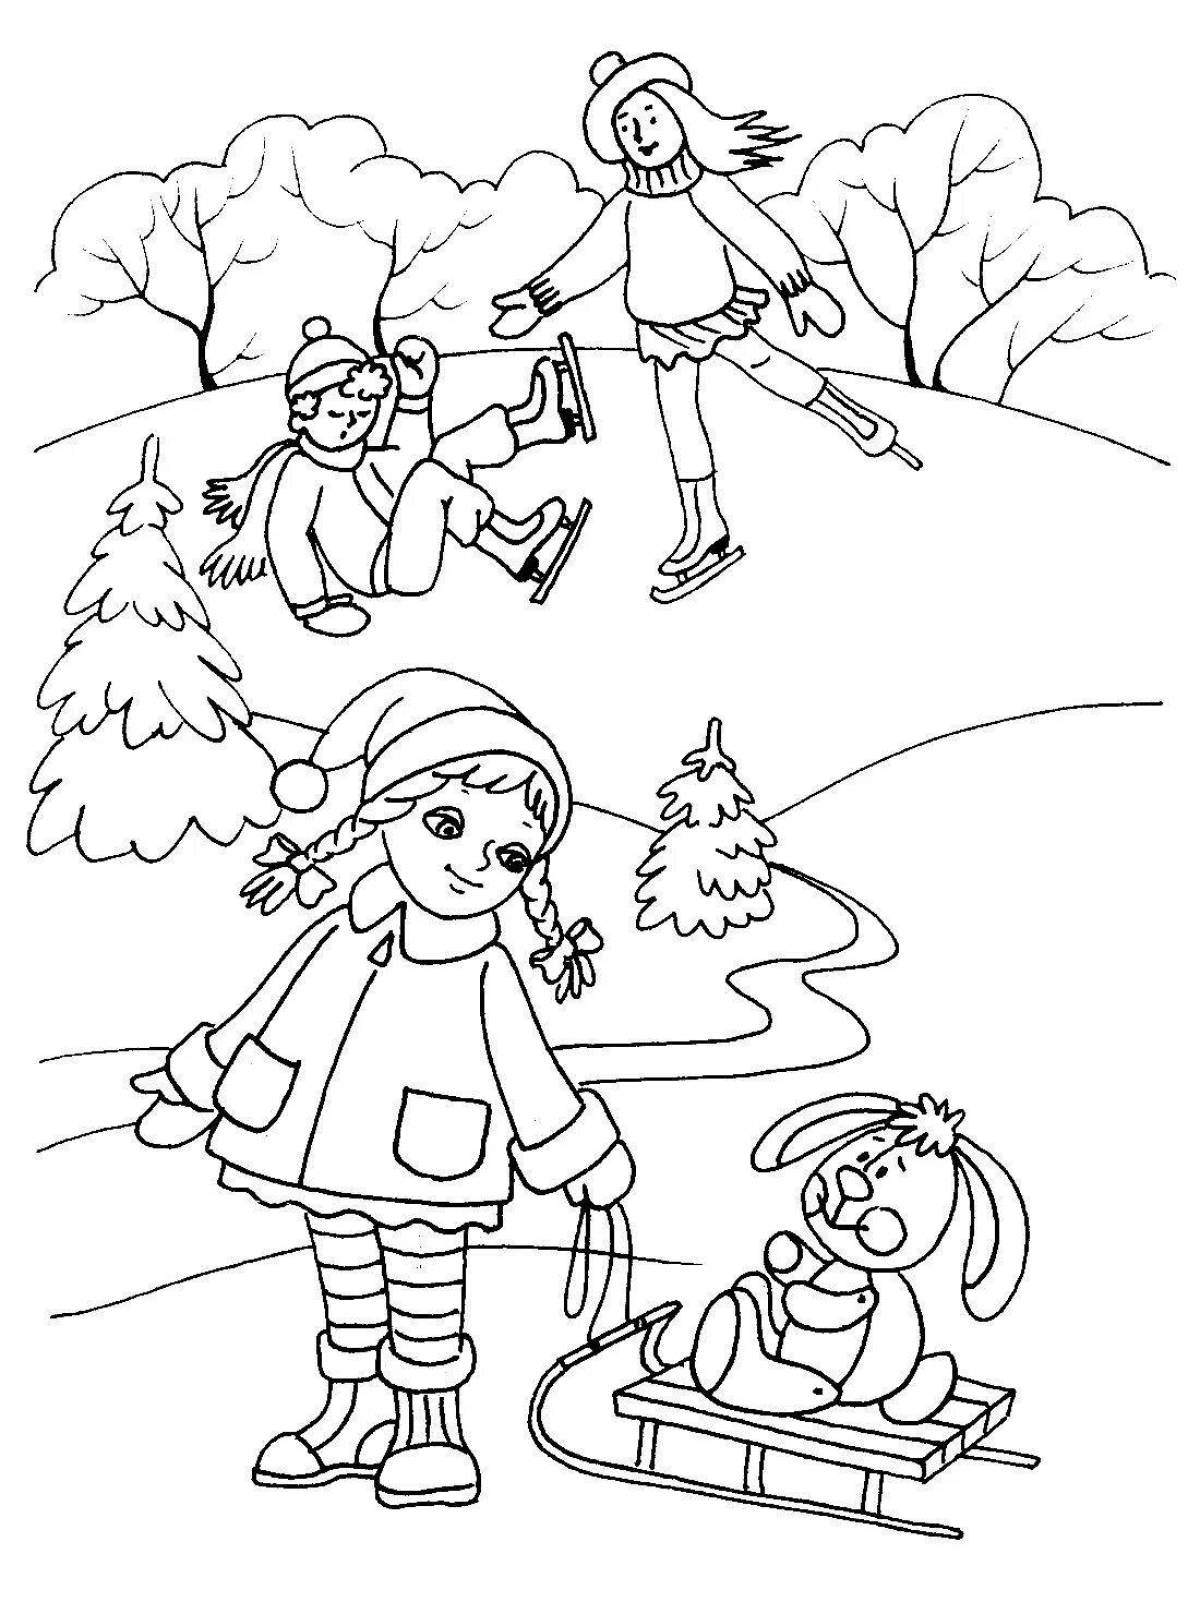 Joyful coloring winter fun for children 3-4 years old in kindergarten